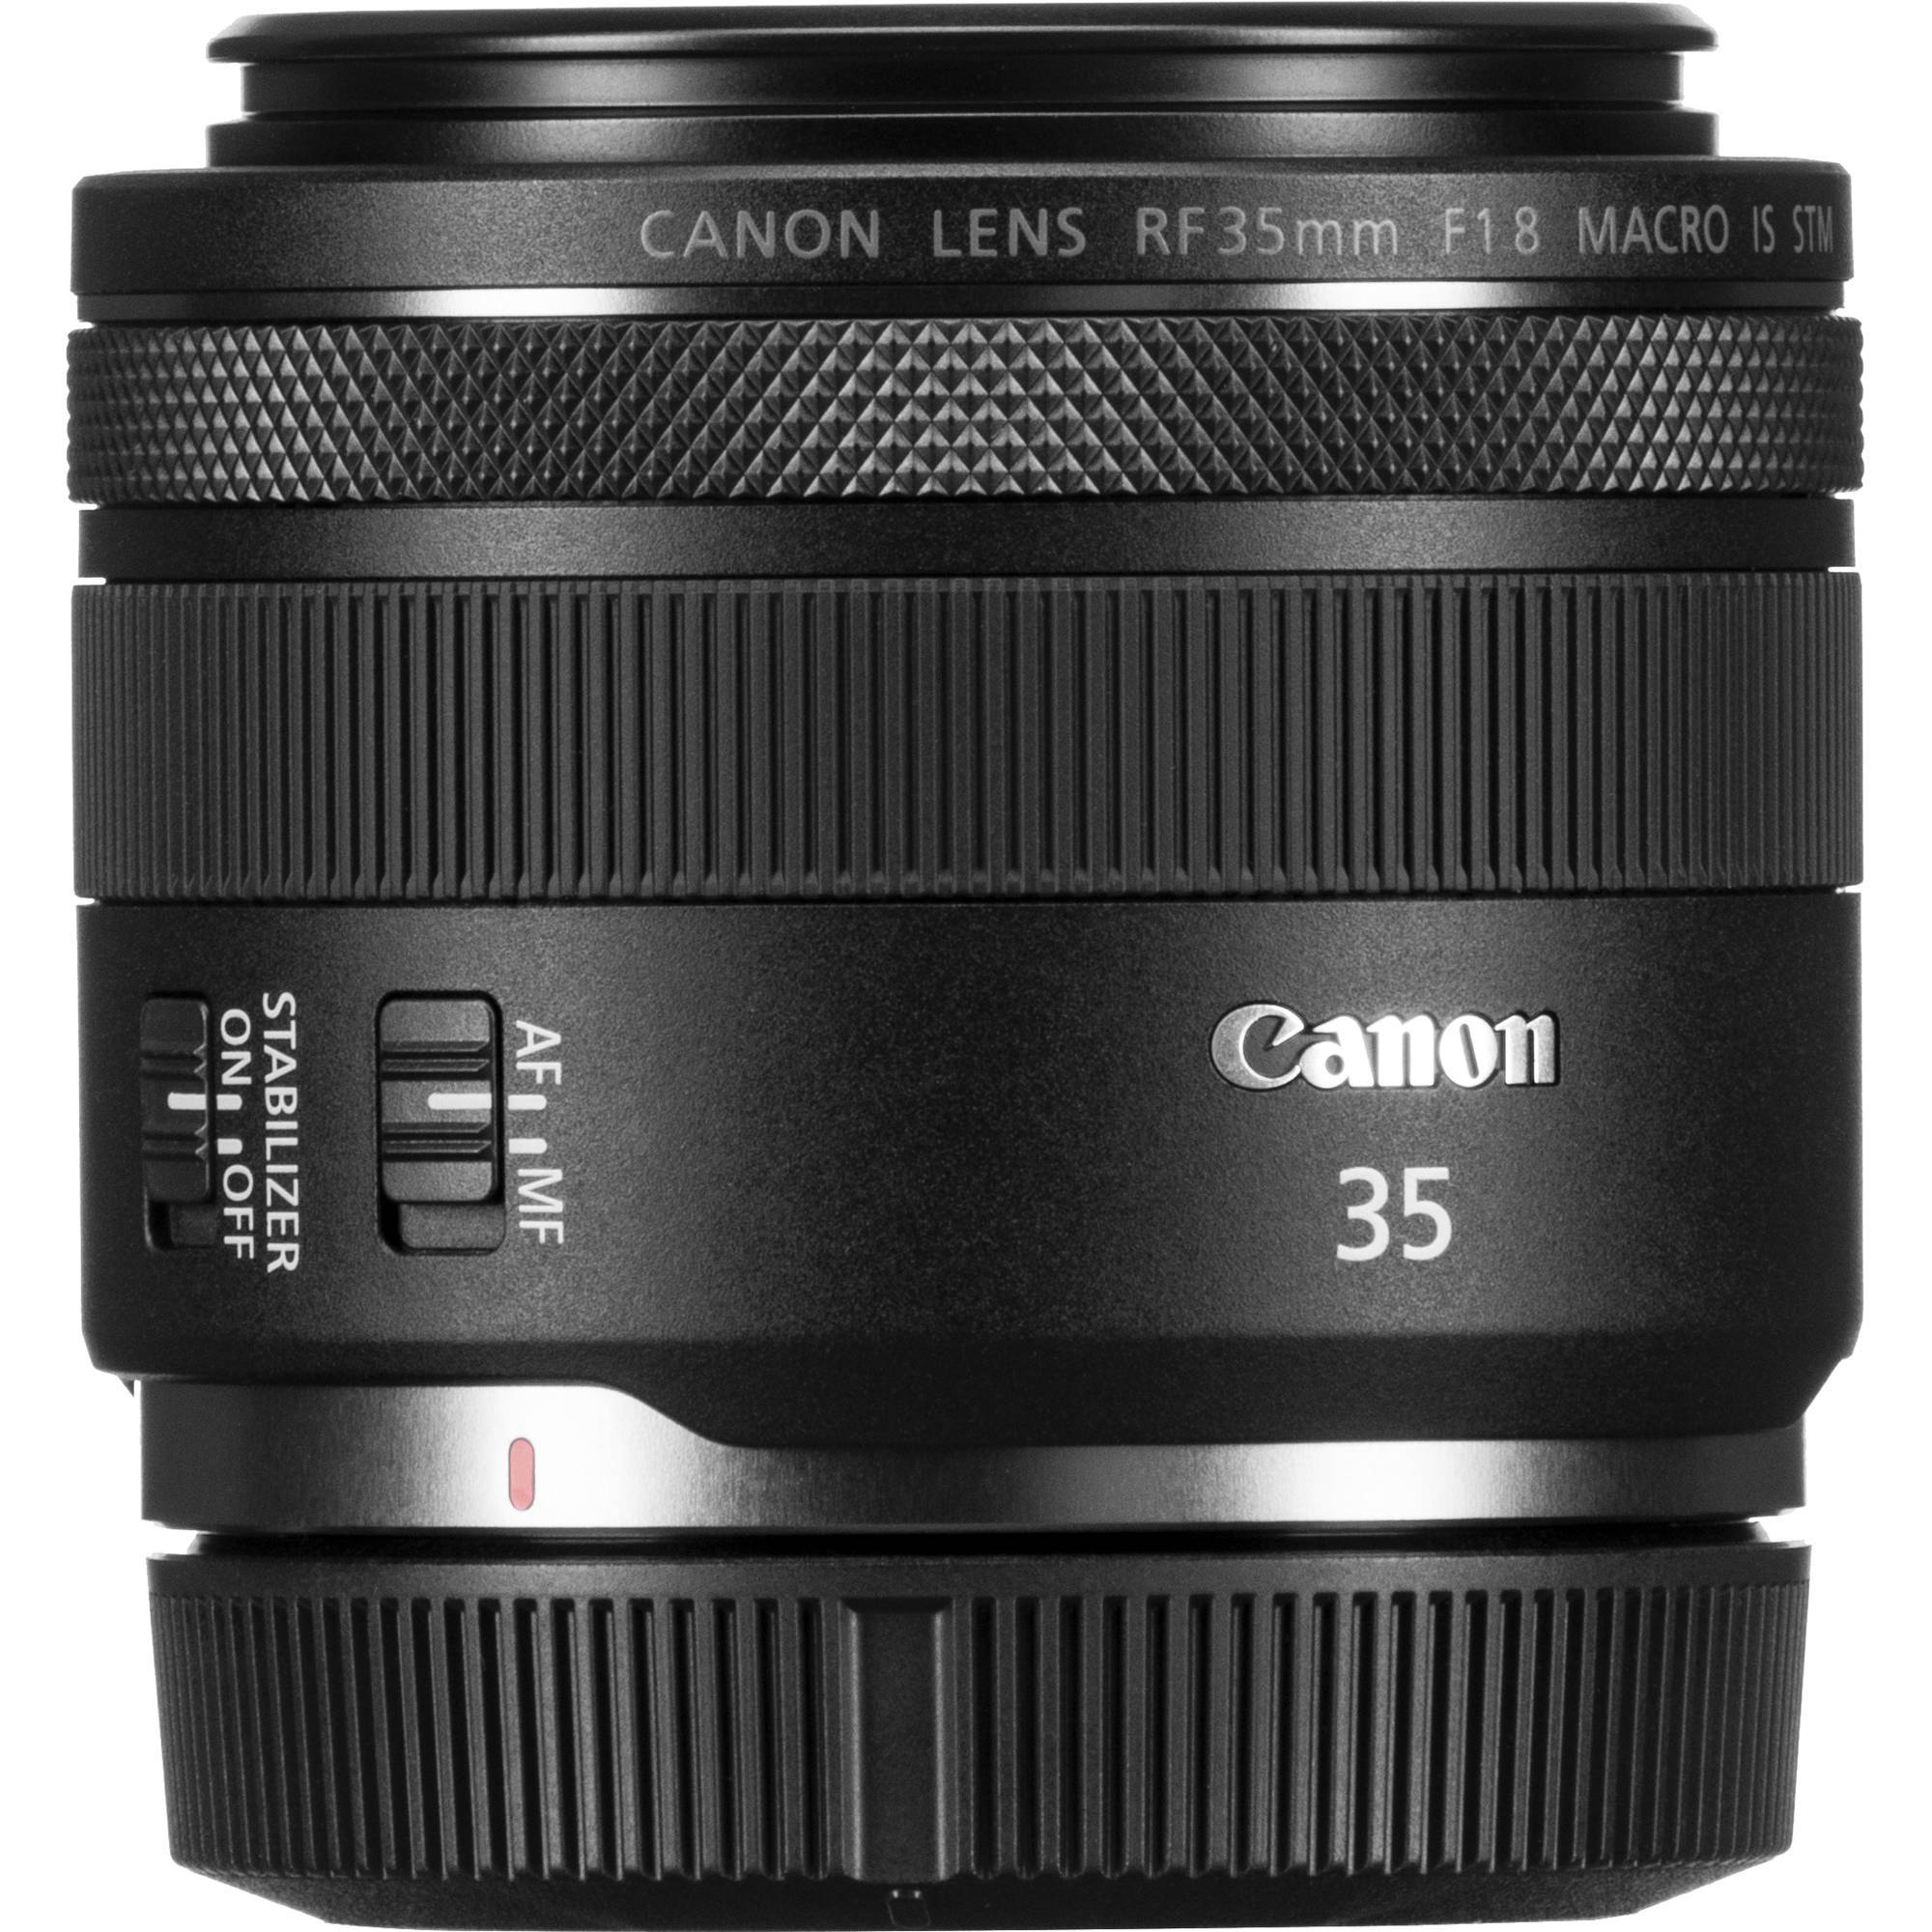 Canon Lens RF 35mm F1.8 MACRO IS STM